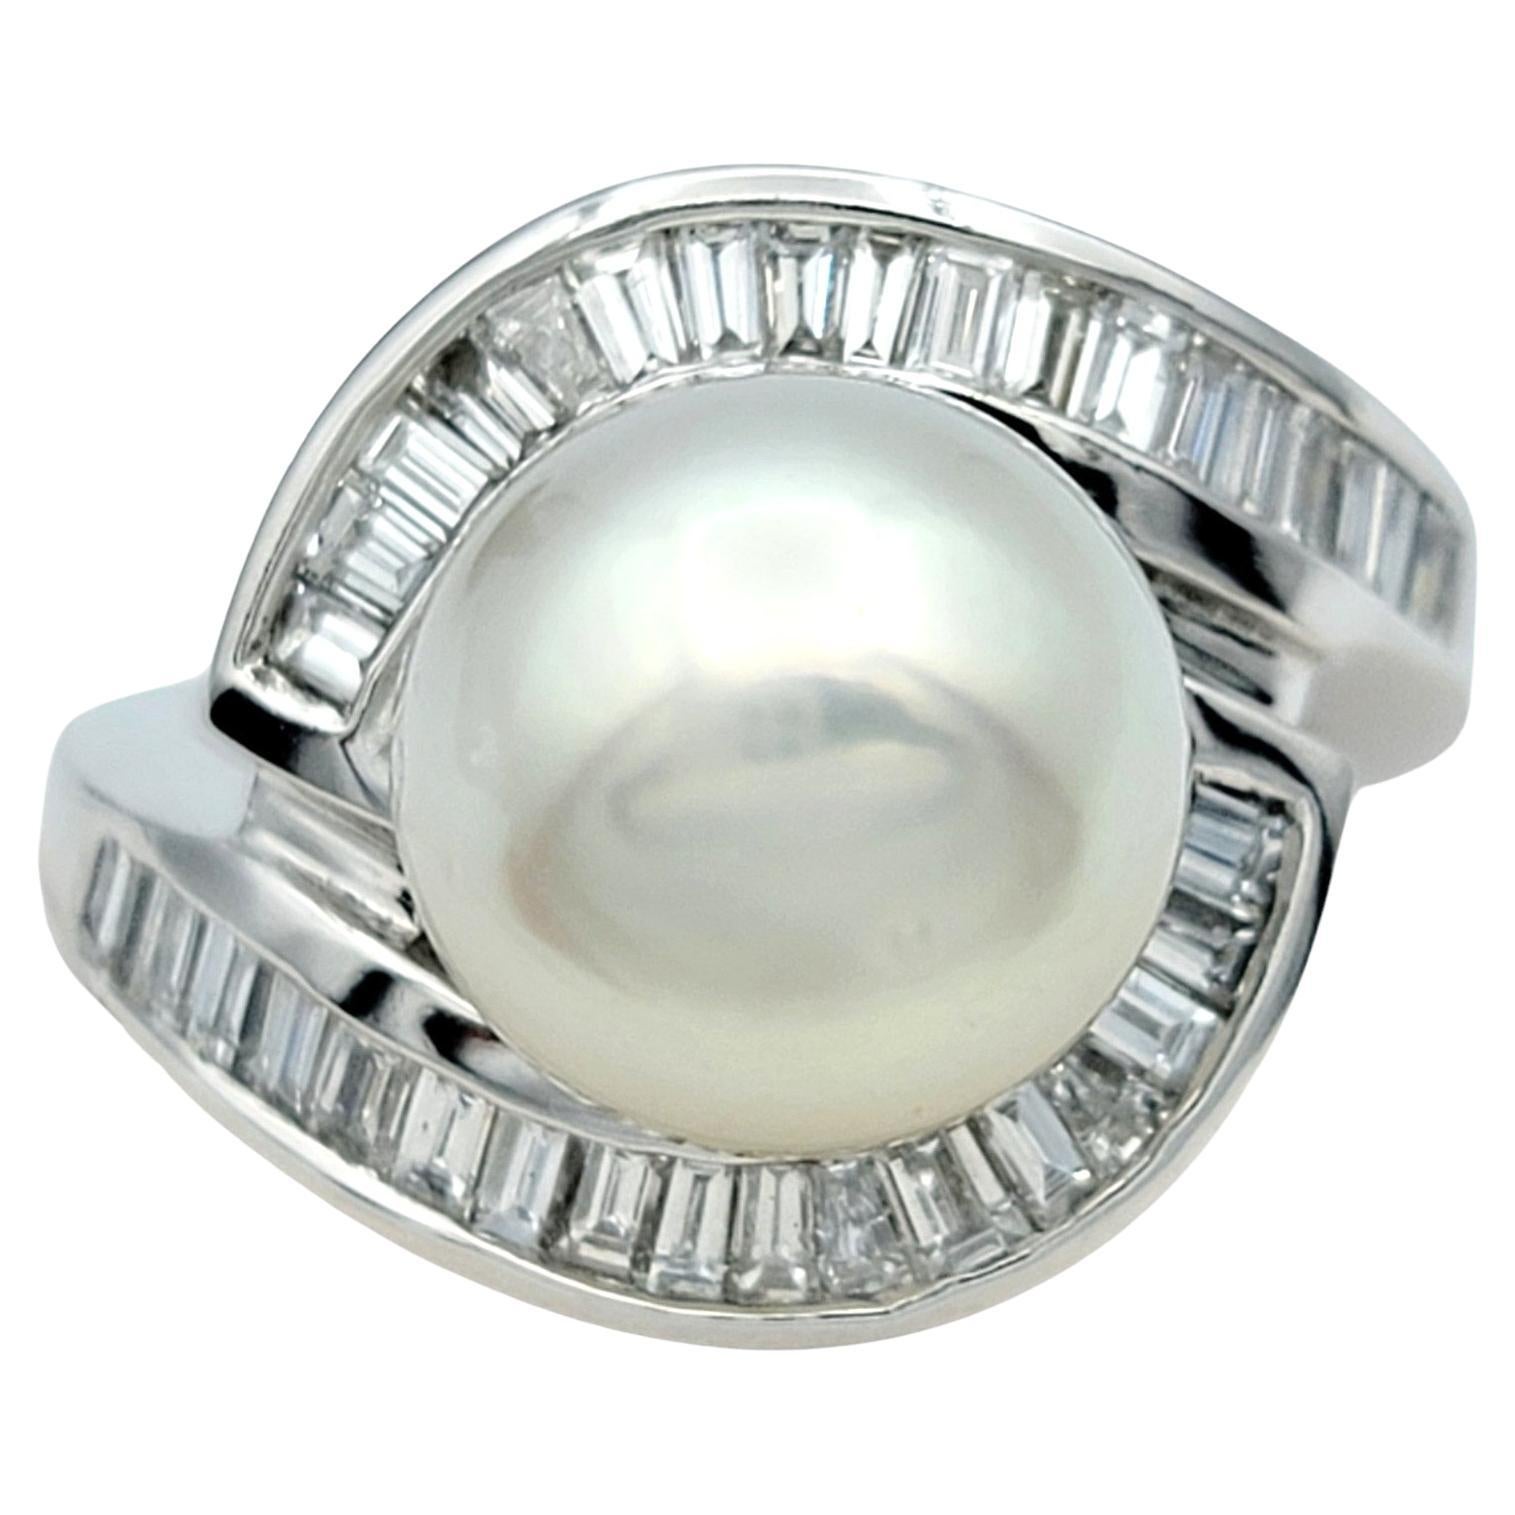 Ringgröße: 6

Dieser atemberaubende Perlen- und Diamantring aus 18 Karat Weißgold ist ein fesselndes und elegantes Schmuckstück, das Raffinesse und Anmut ausstrahlt. In ihrem Zentrum ruht eine strahlend weiße Akoya-Perle, die für ihren strahlenden